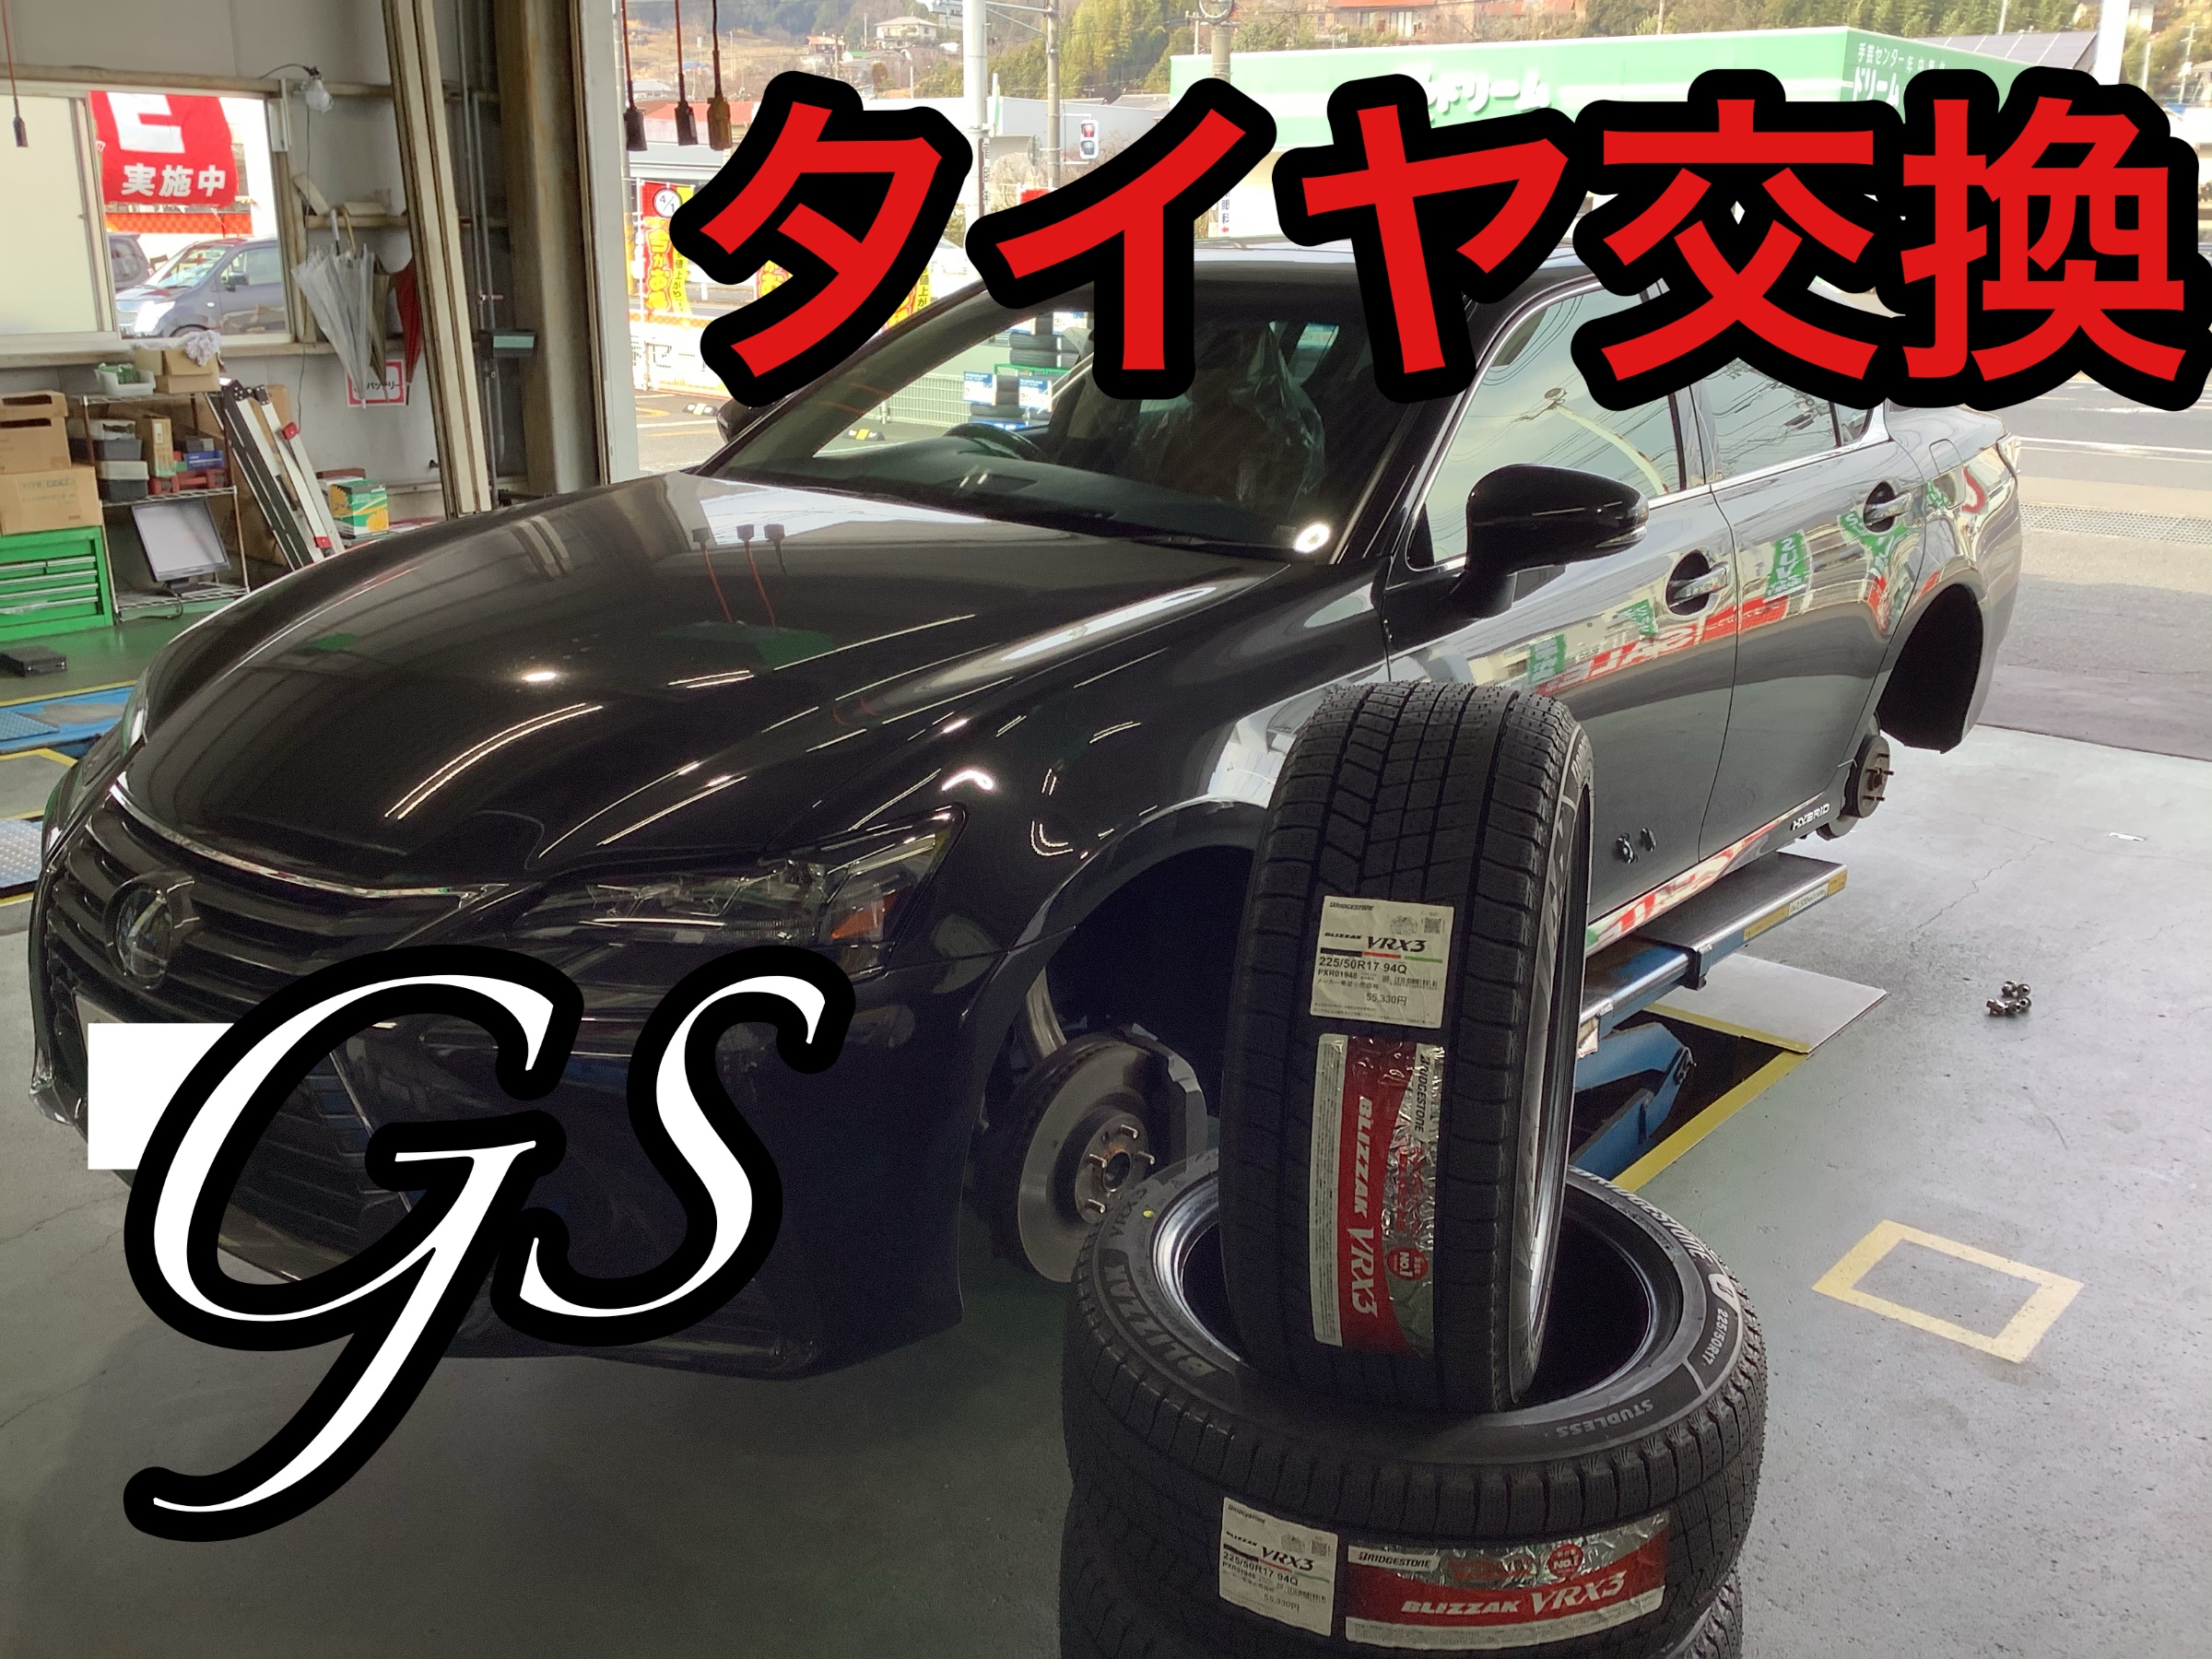 レクサス GS スタッドレスタイヤ交換 ハブ防錆 | レクサス GS タイヤ